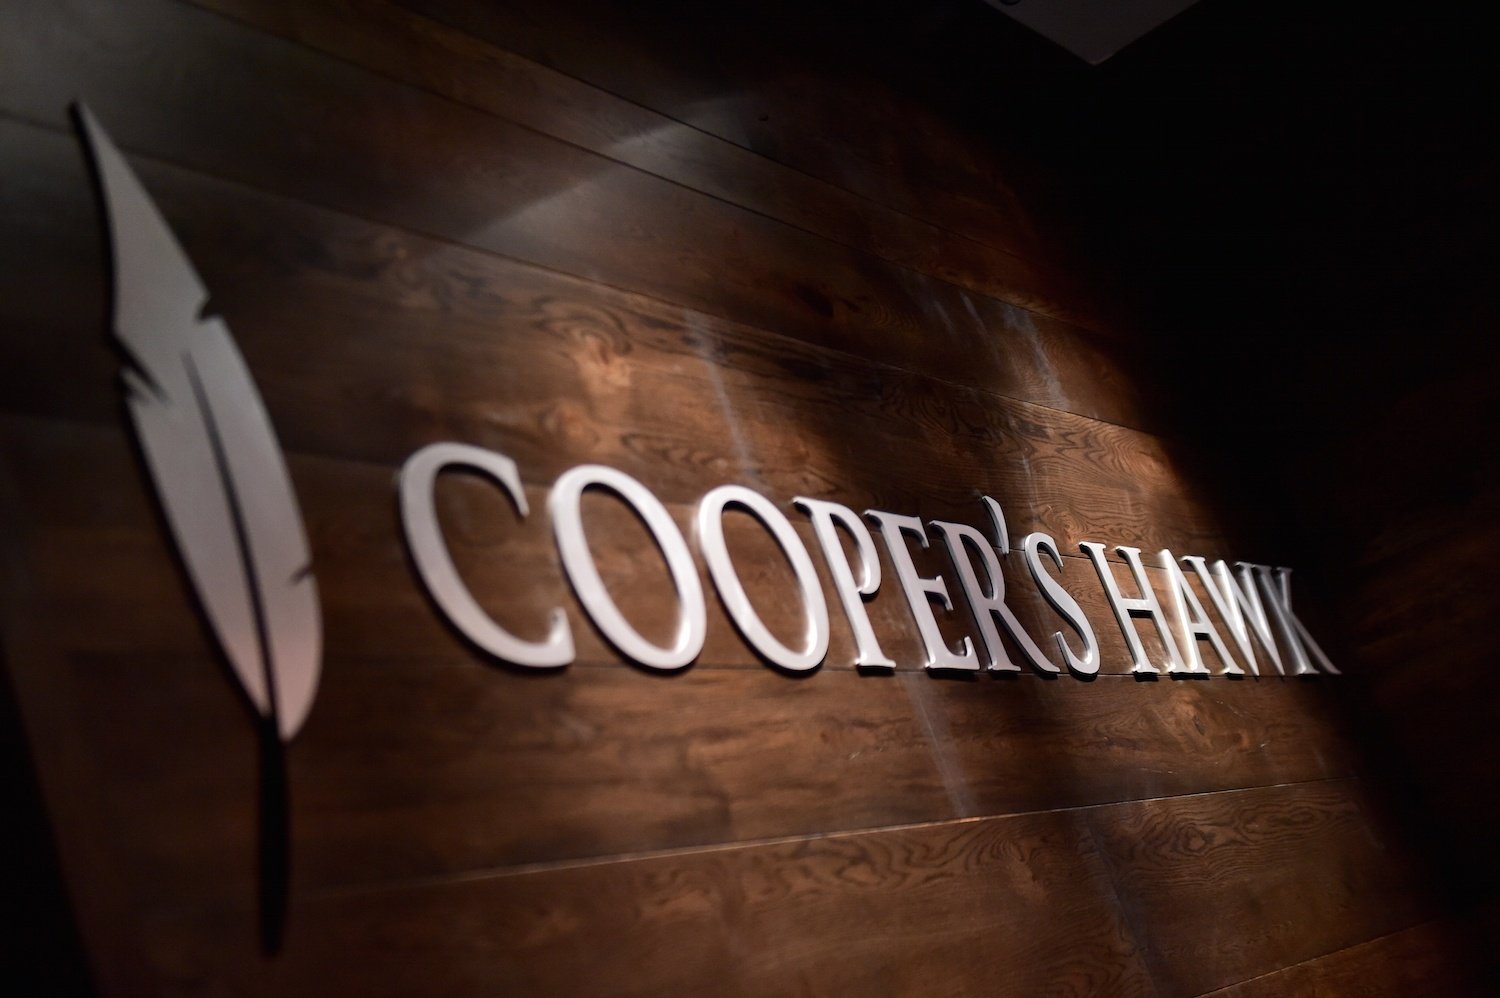 Cooper's Hawk logo on a dark brown woodgrain background